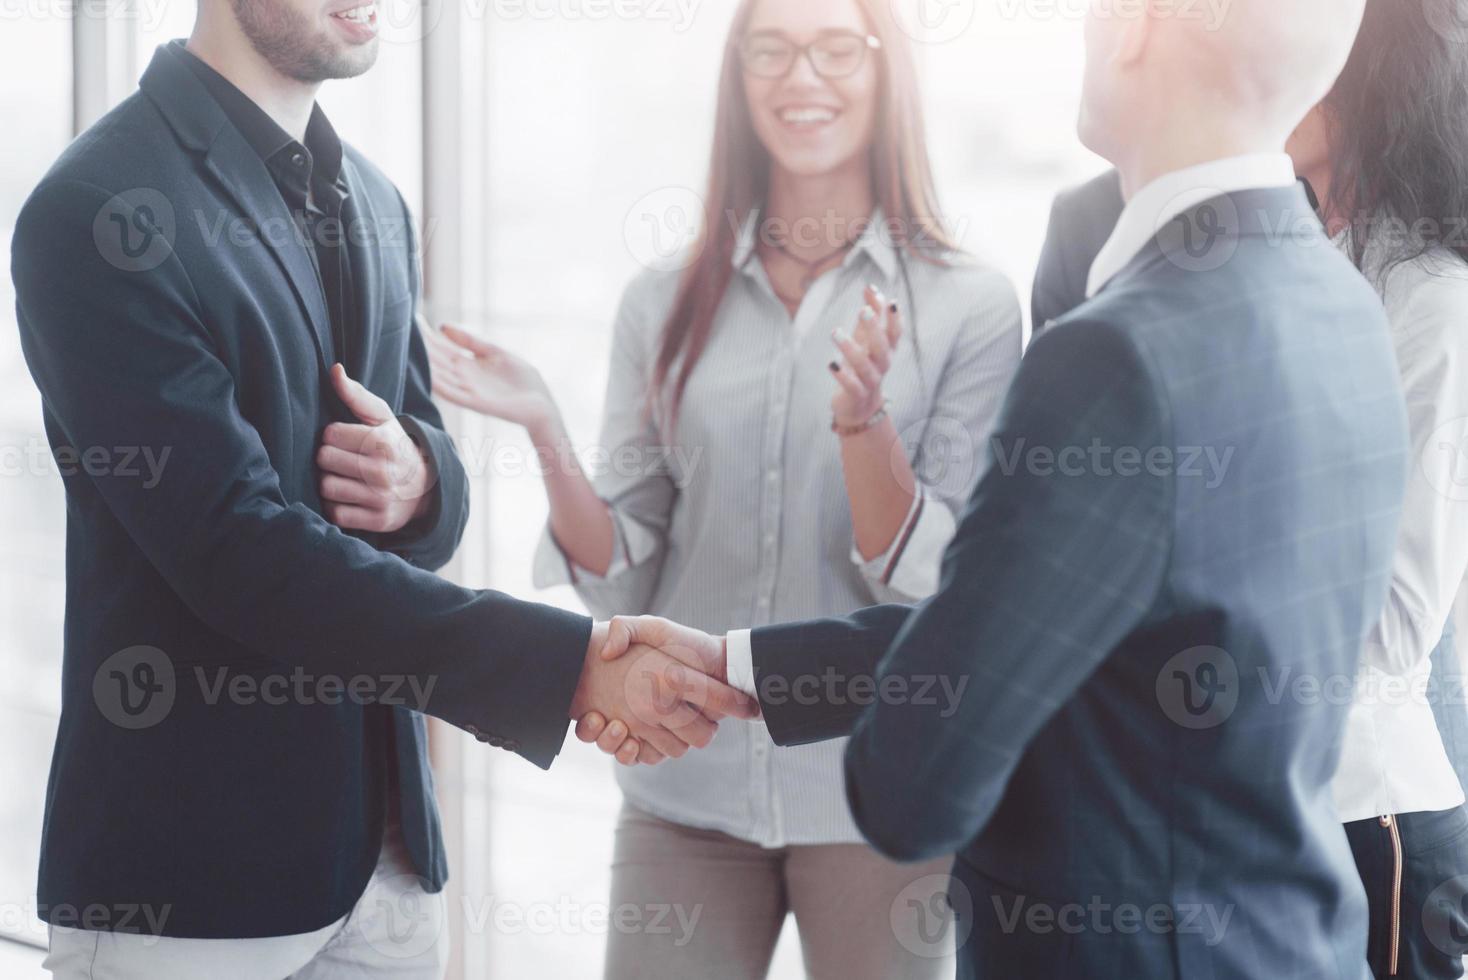 Dos hombre de negocios confiado dándose la mano durante una reunión en la oficina, el éxito, el trato, el saludo y el concepto de socio foto